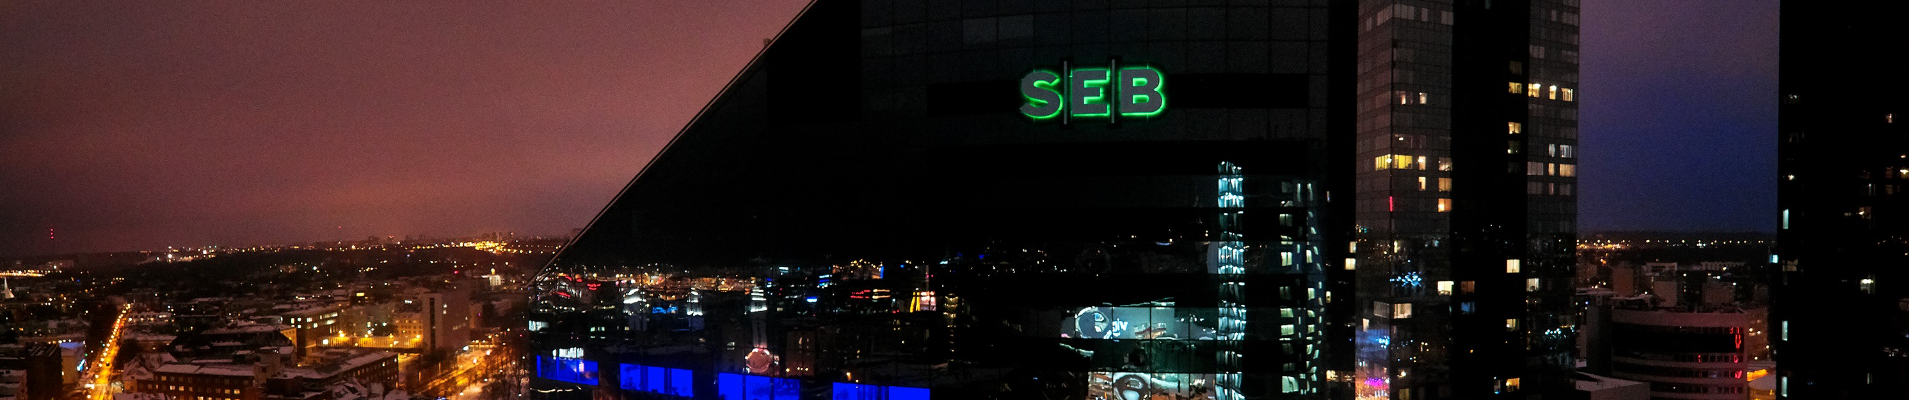 SEB Grupp on juhtiv Põhjamaade finantsteenuste grupp, mis asutati 1856. aastal.